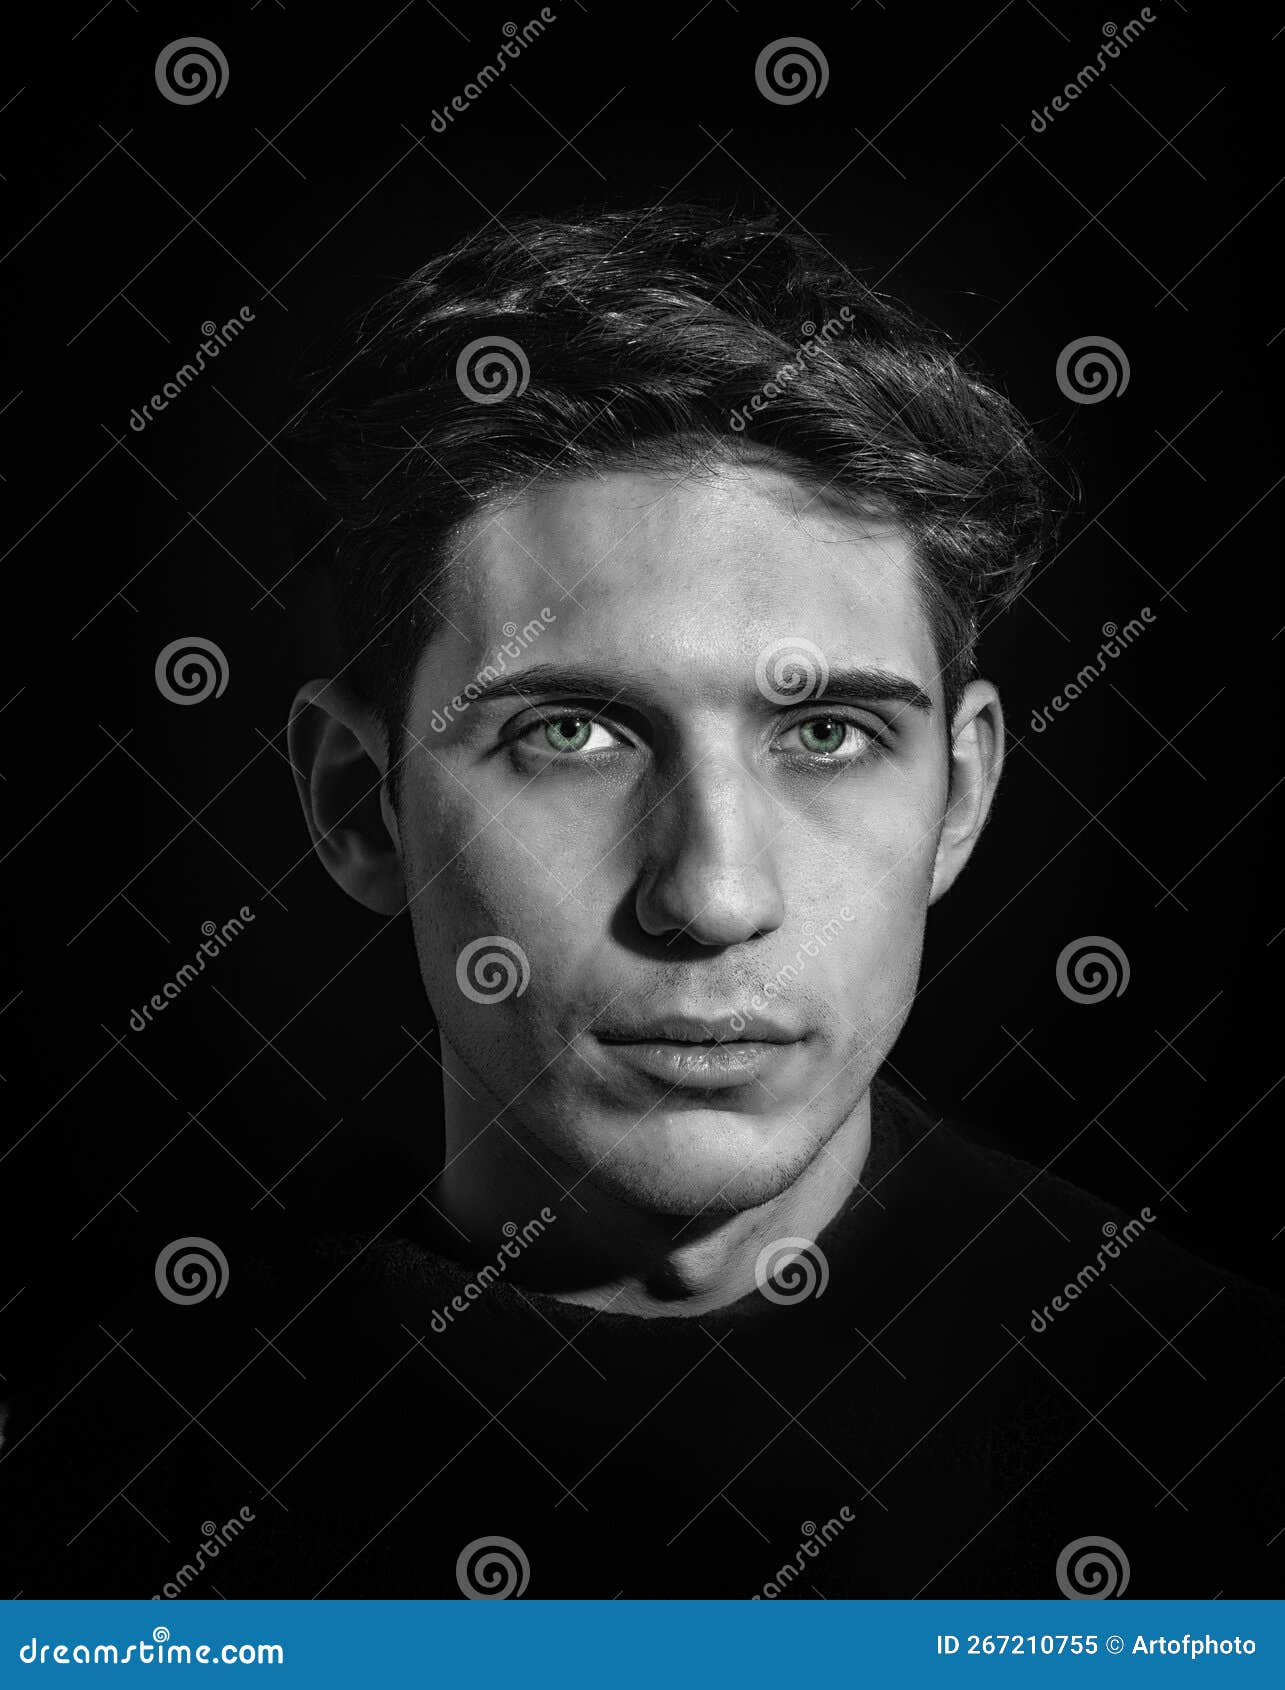 Closeup Headshot of Young Man, Dark Hair and Green Eyes Stock Image ...